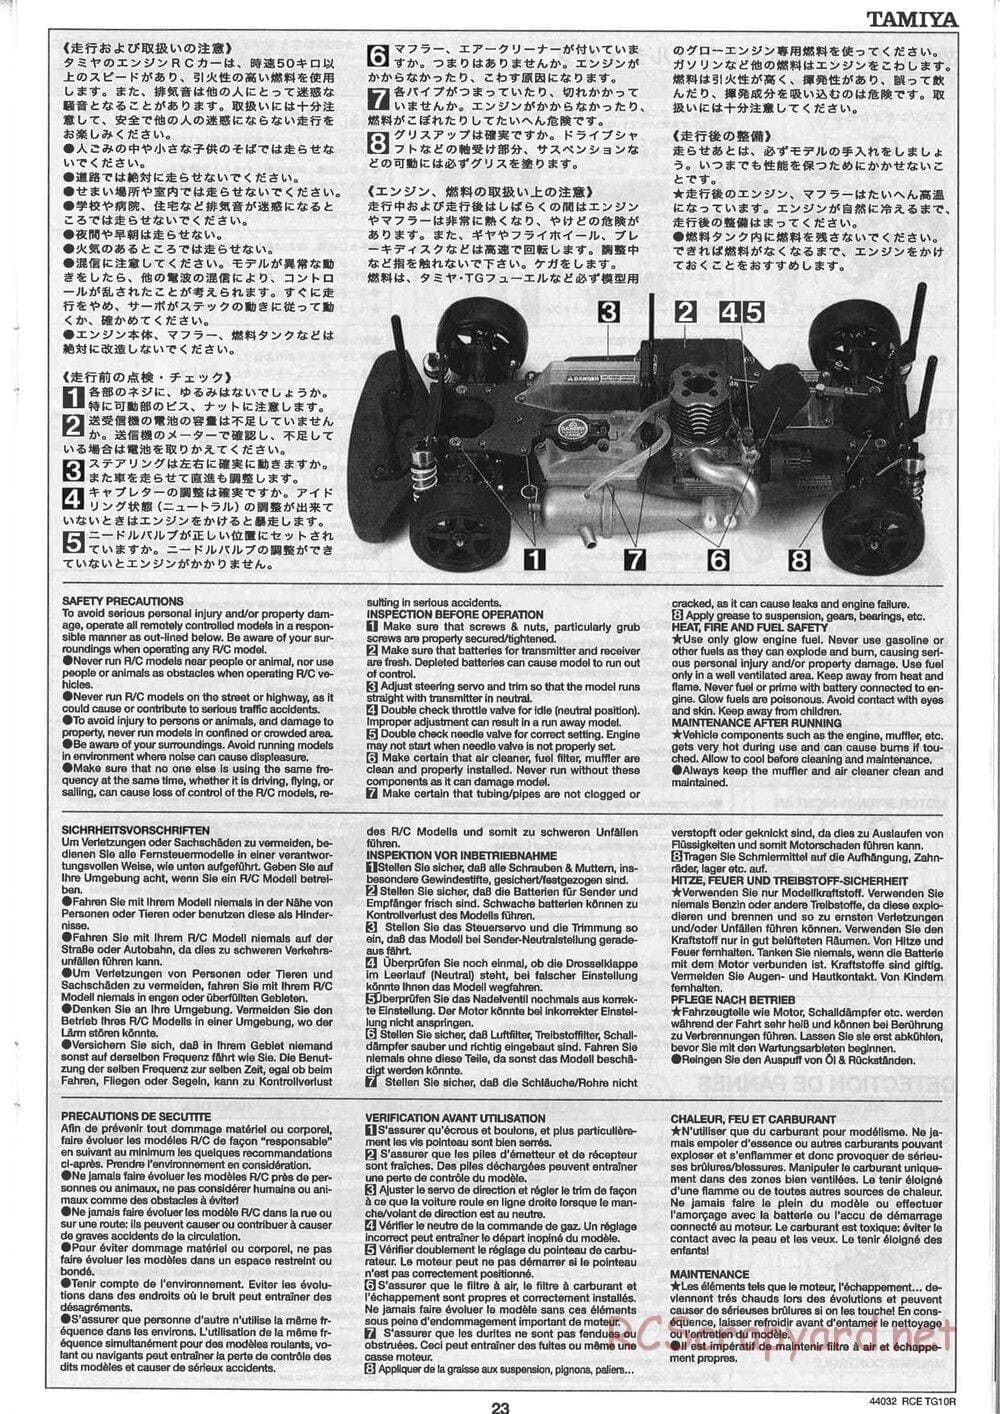 Tamiya - TG10R Chassis - Manual - Page 23